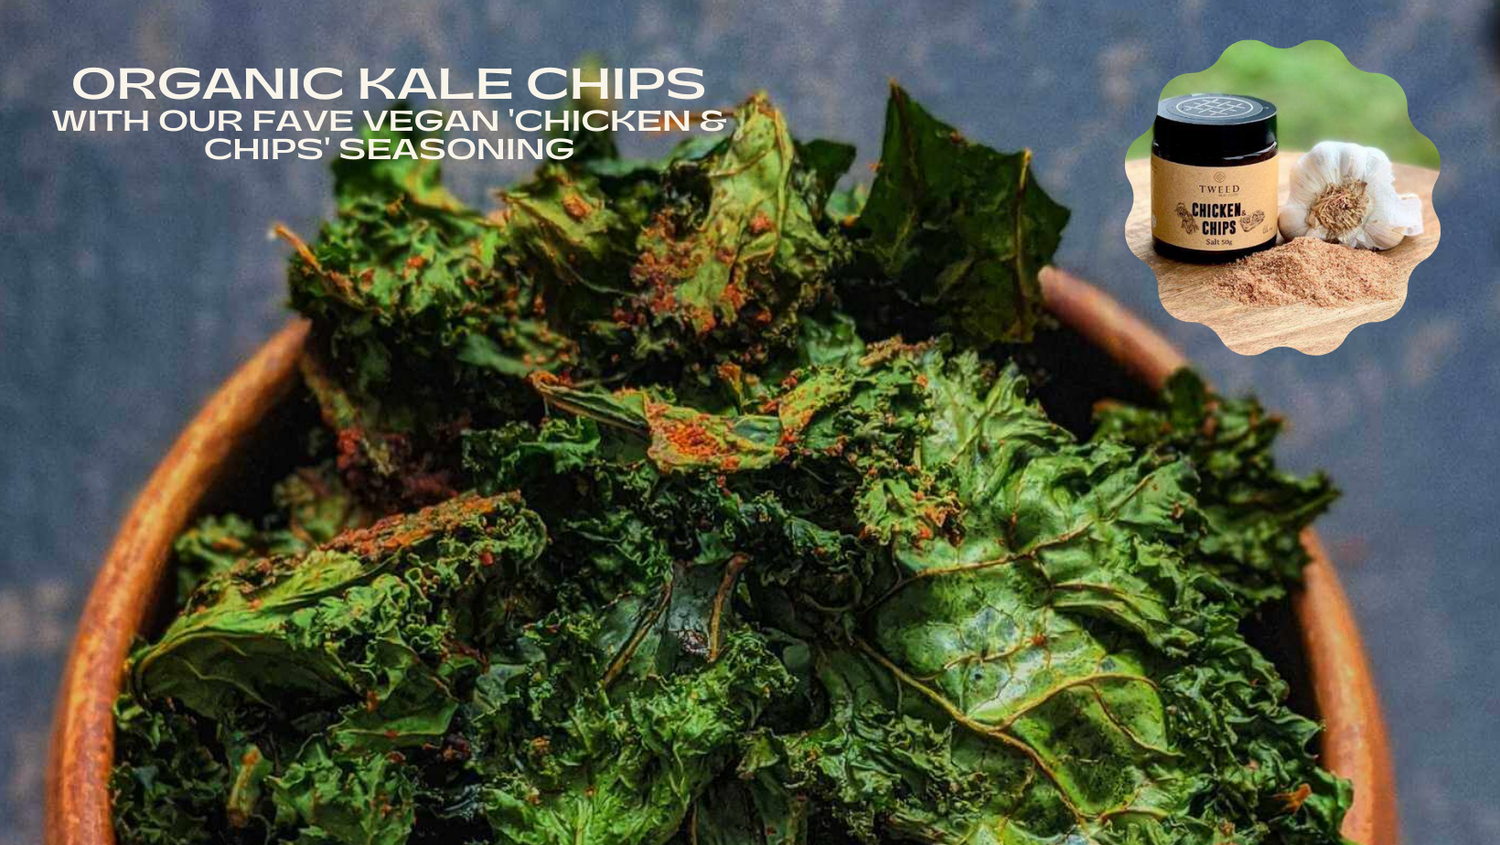 Organic Kale Chips with vegan 'Chicken & Chips' seasoning.